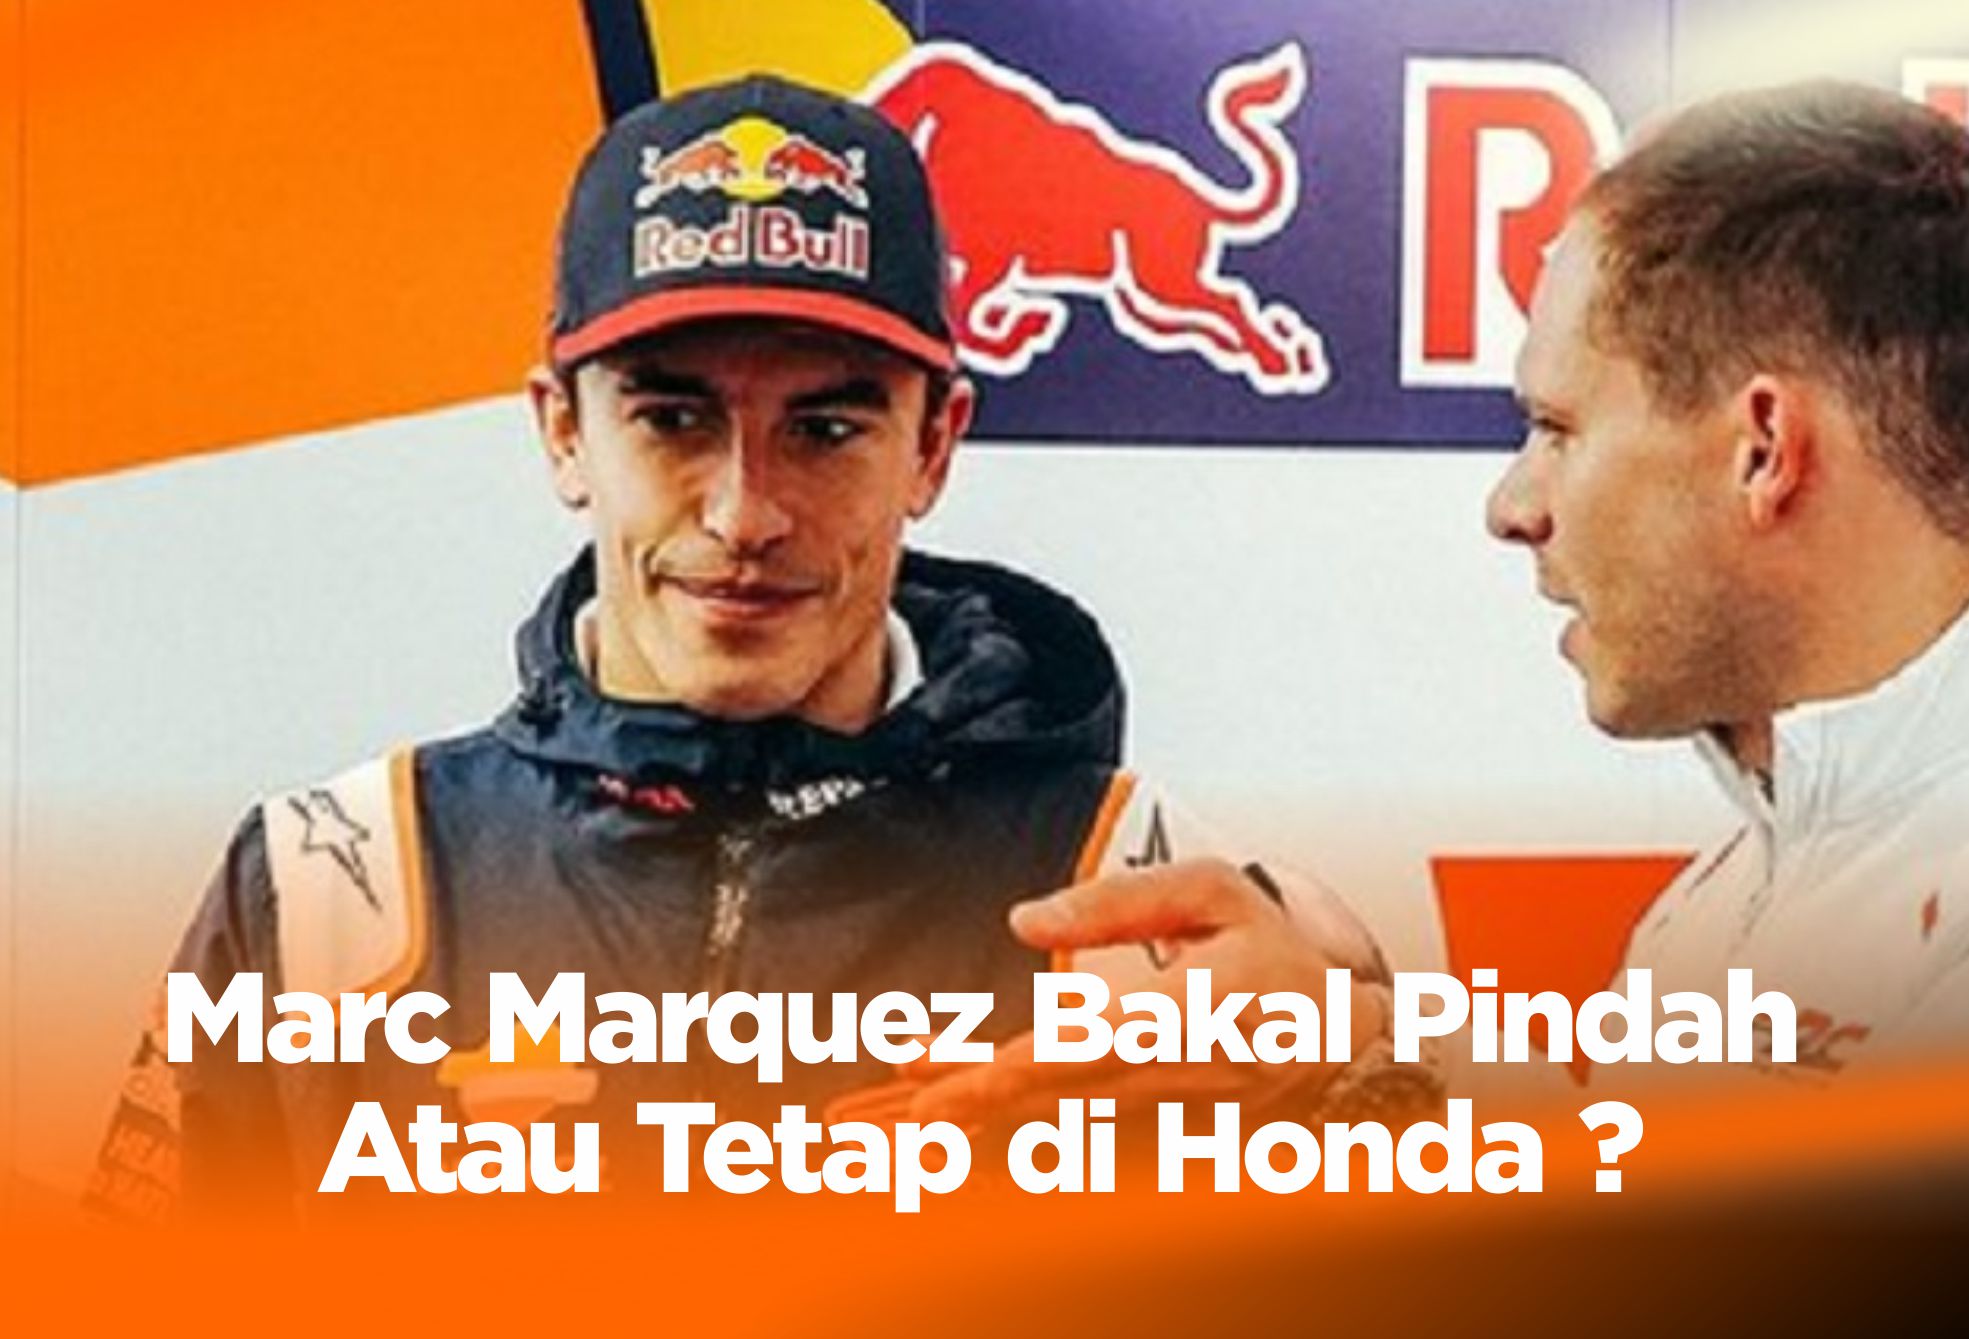 Marc Marquez Bakal Pindah Atau Tetap di Honda ?